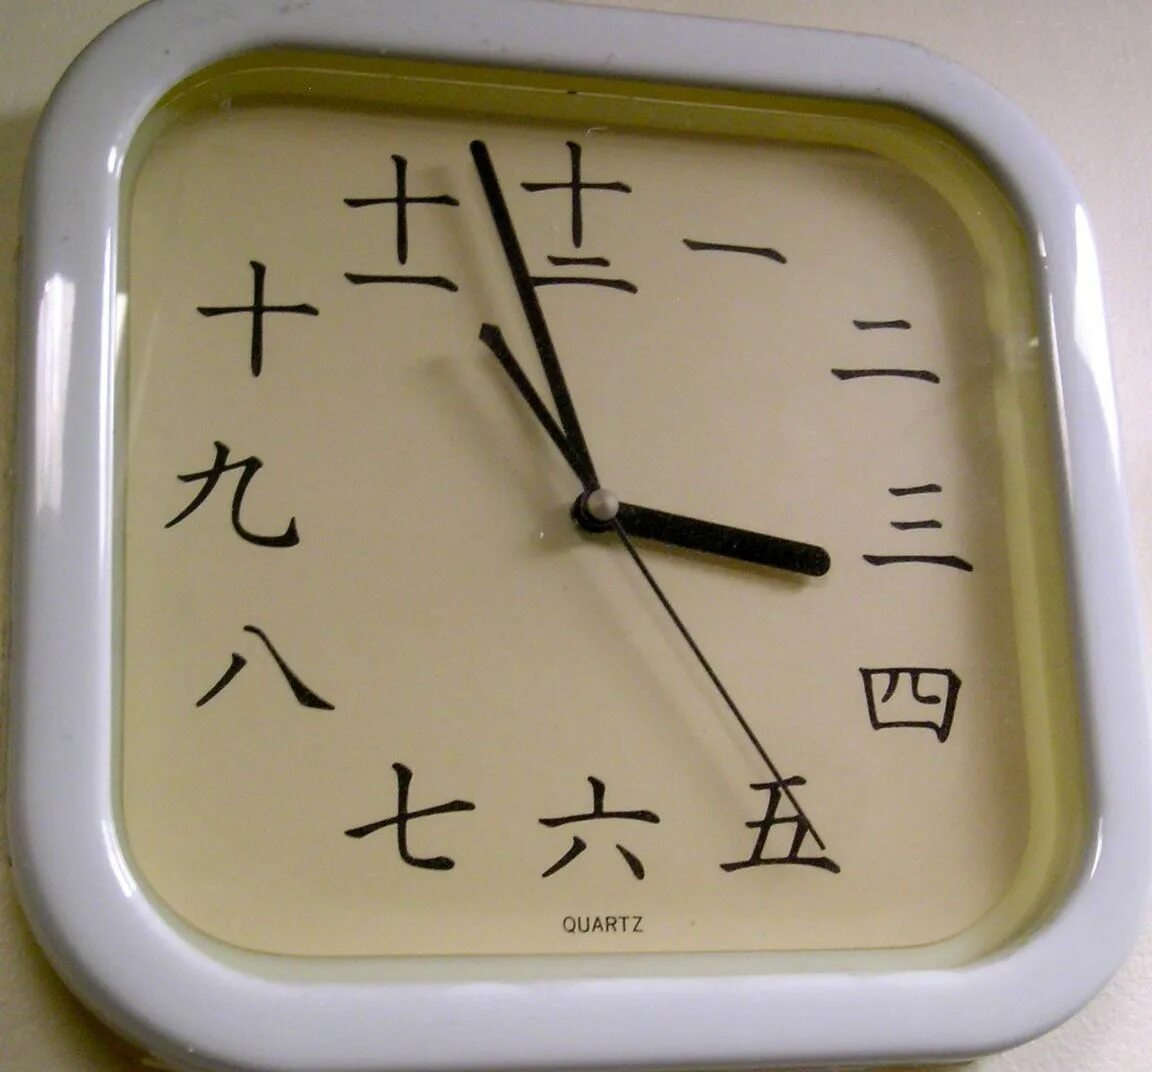 Часы в китае названия. Часы в китайском языке. Часы с китайскими цифрами. Часы "китайские иероглифы". Время в китайском языке часы.